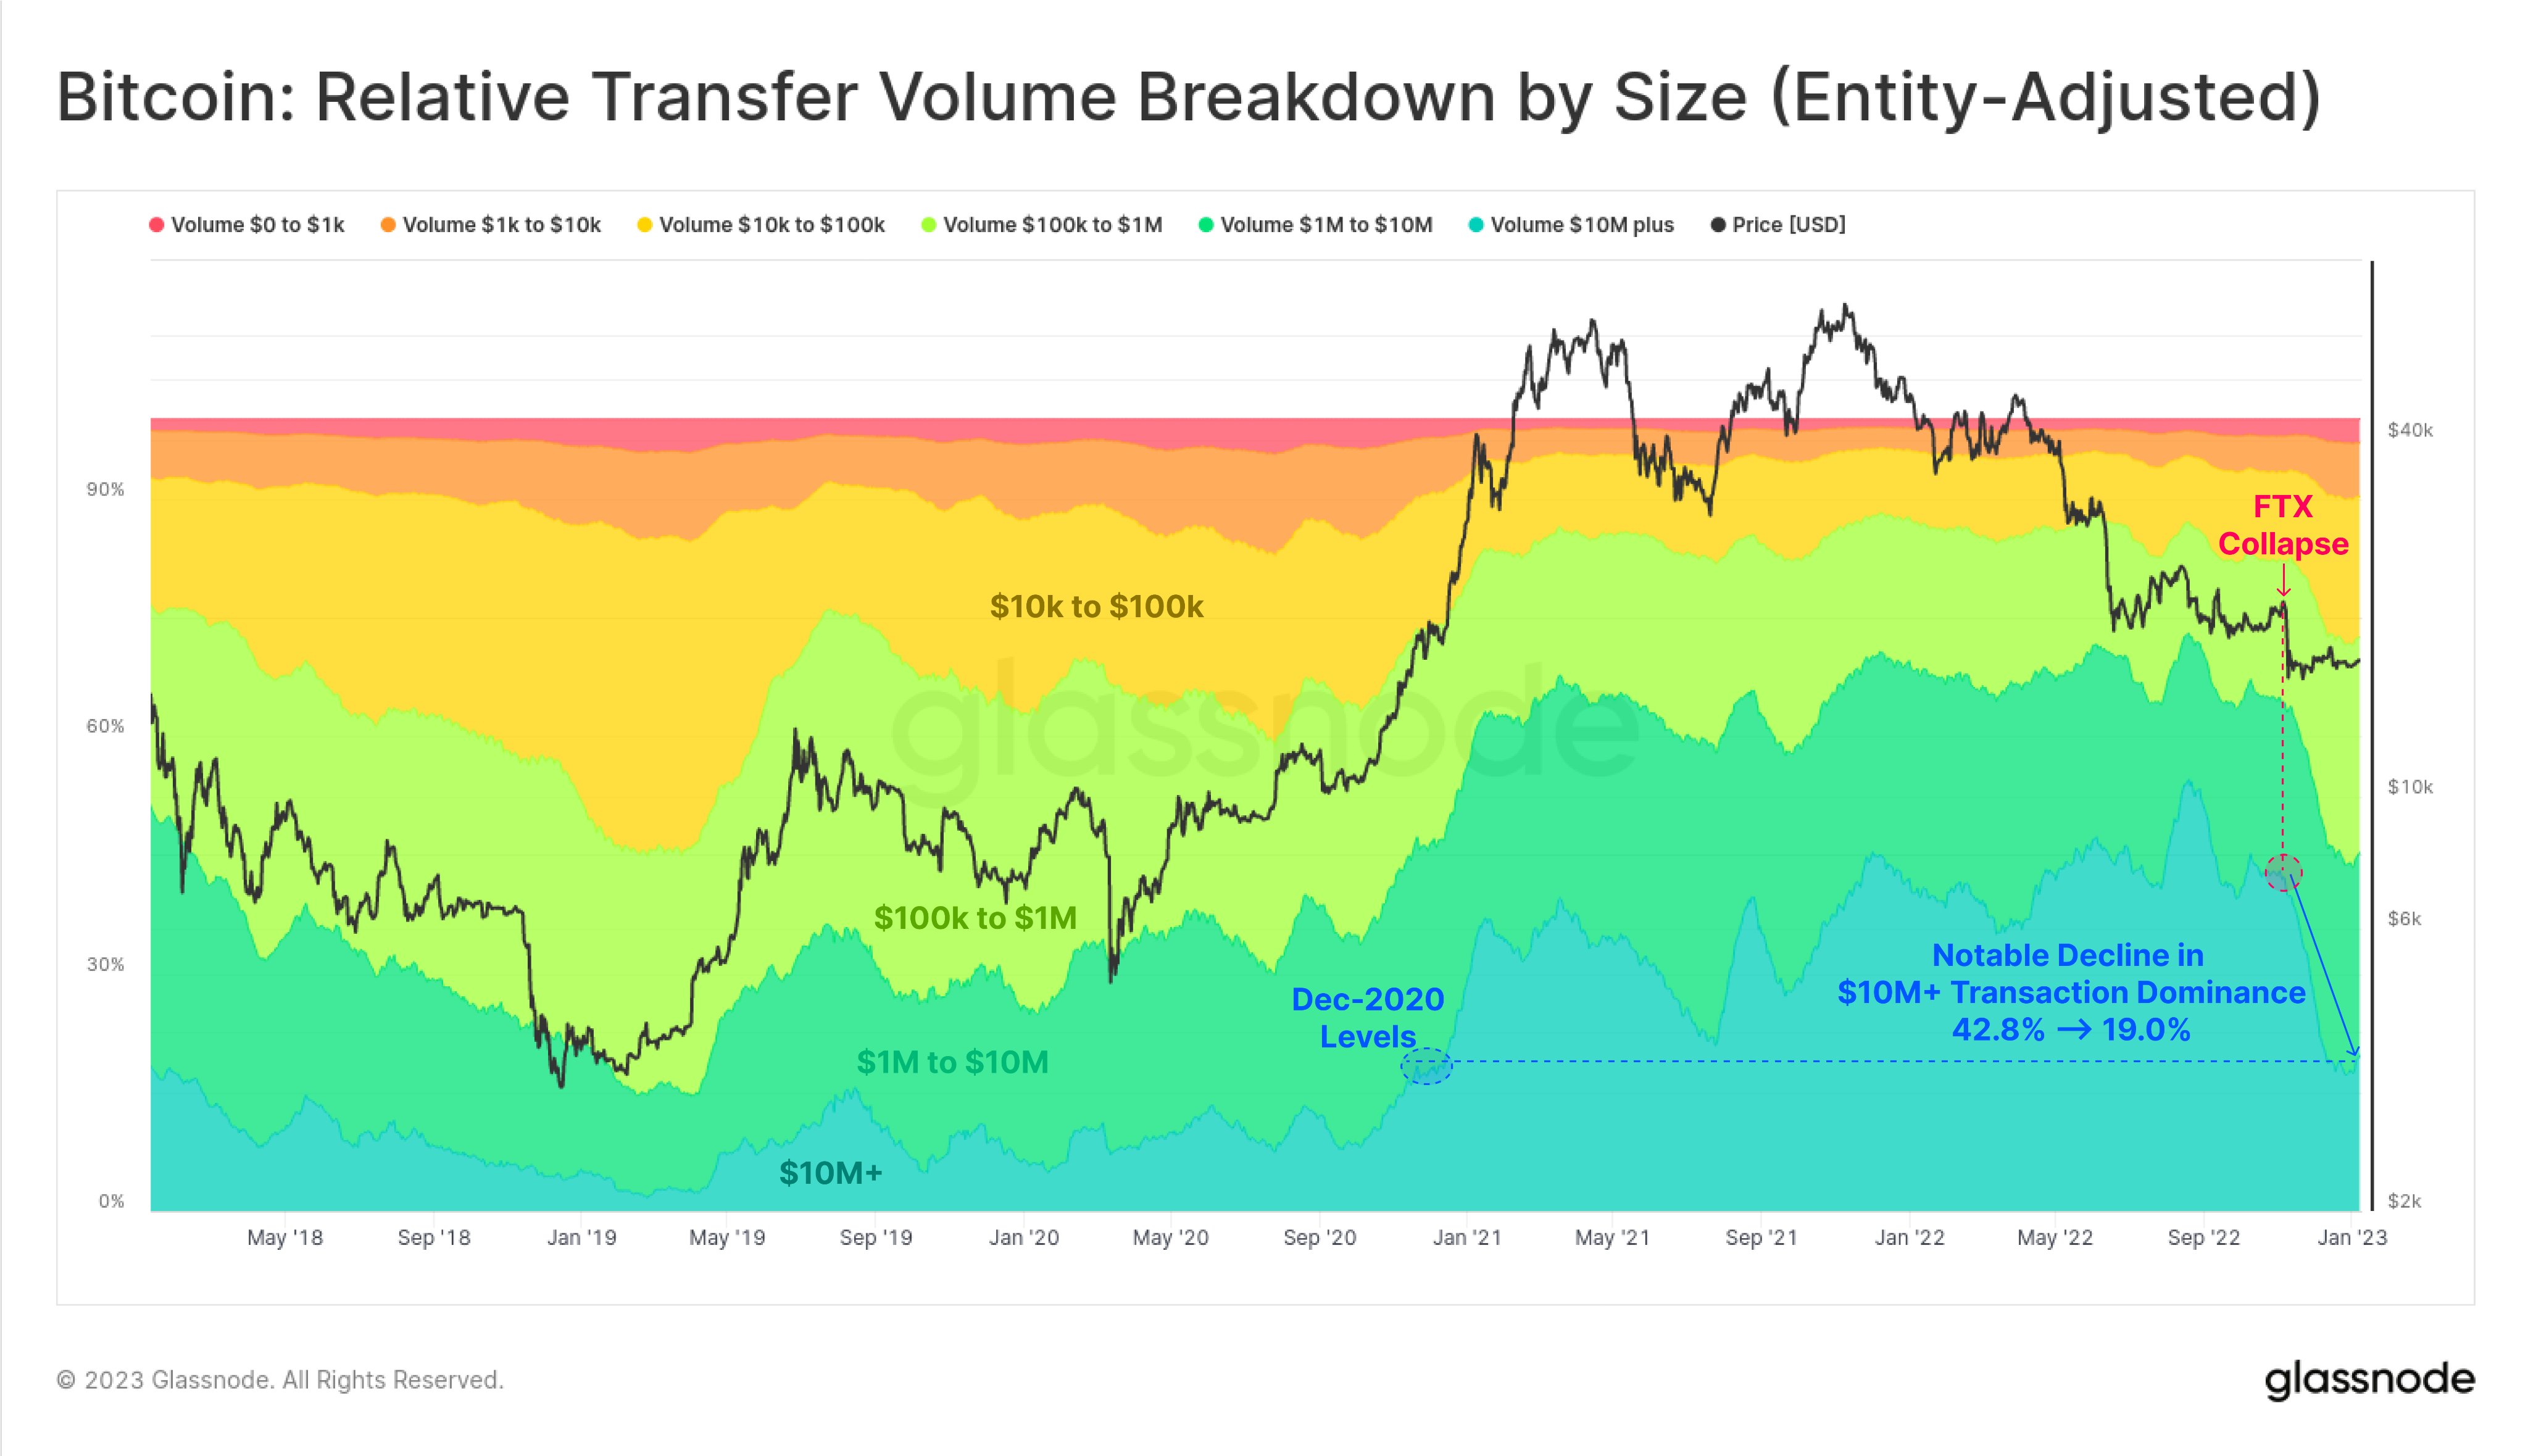 Bitcoin Volume Breakdown